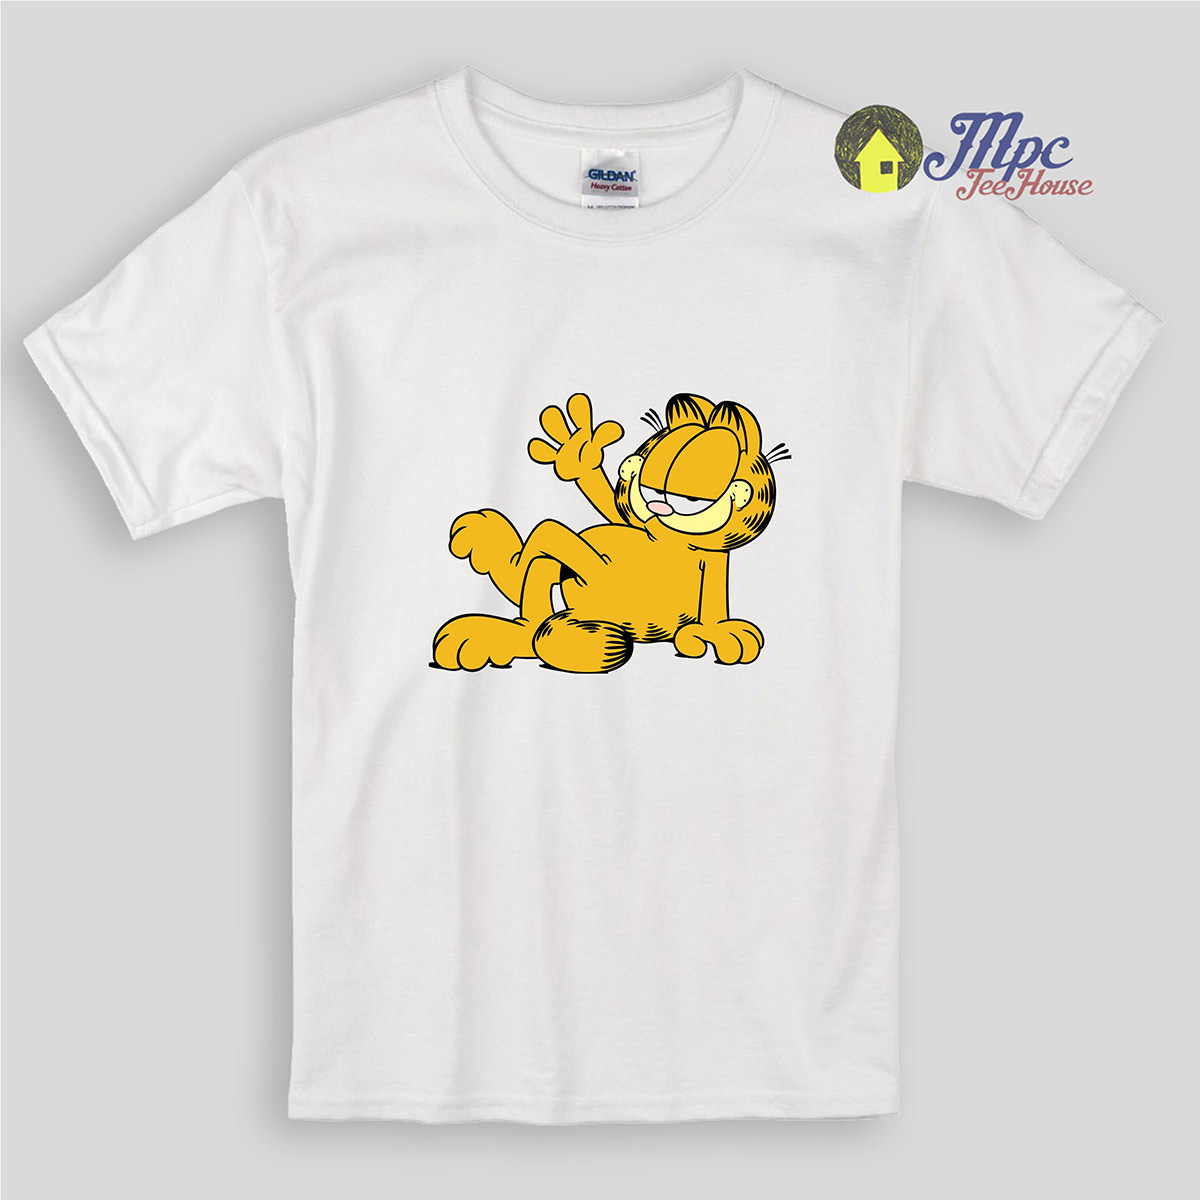 Details about   Garfield Even Better Juniors T-Shirt